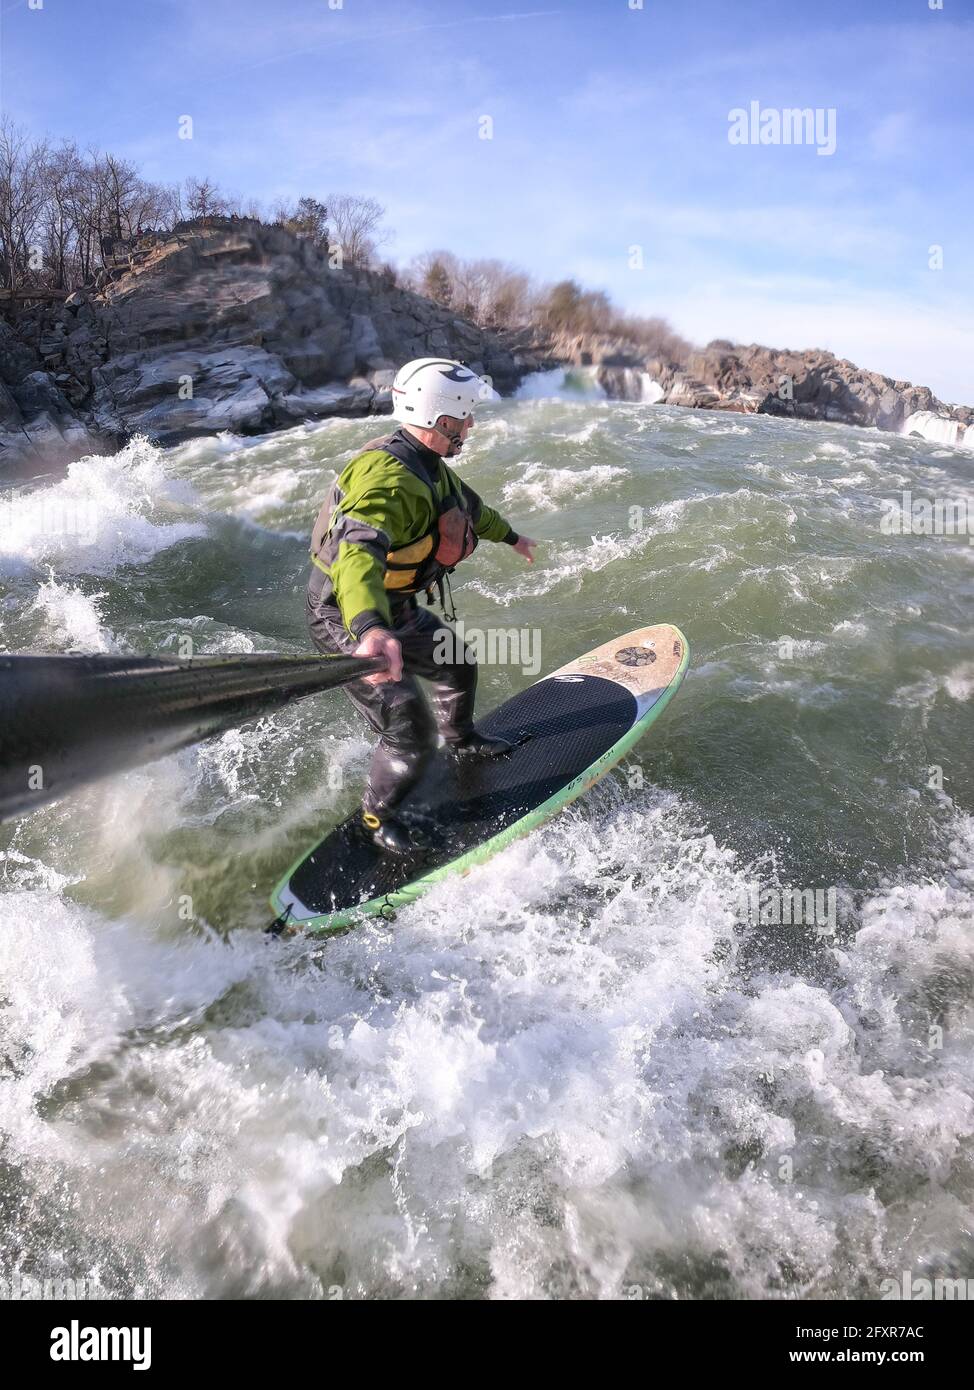 Fotógrafo Skip Brown stand up paddle surfs en invierno desafiando aguas blancas por debajo de las Great Falls del río Potomac, EE.UU. Foto de stock